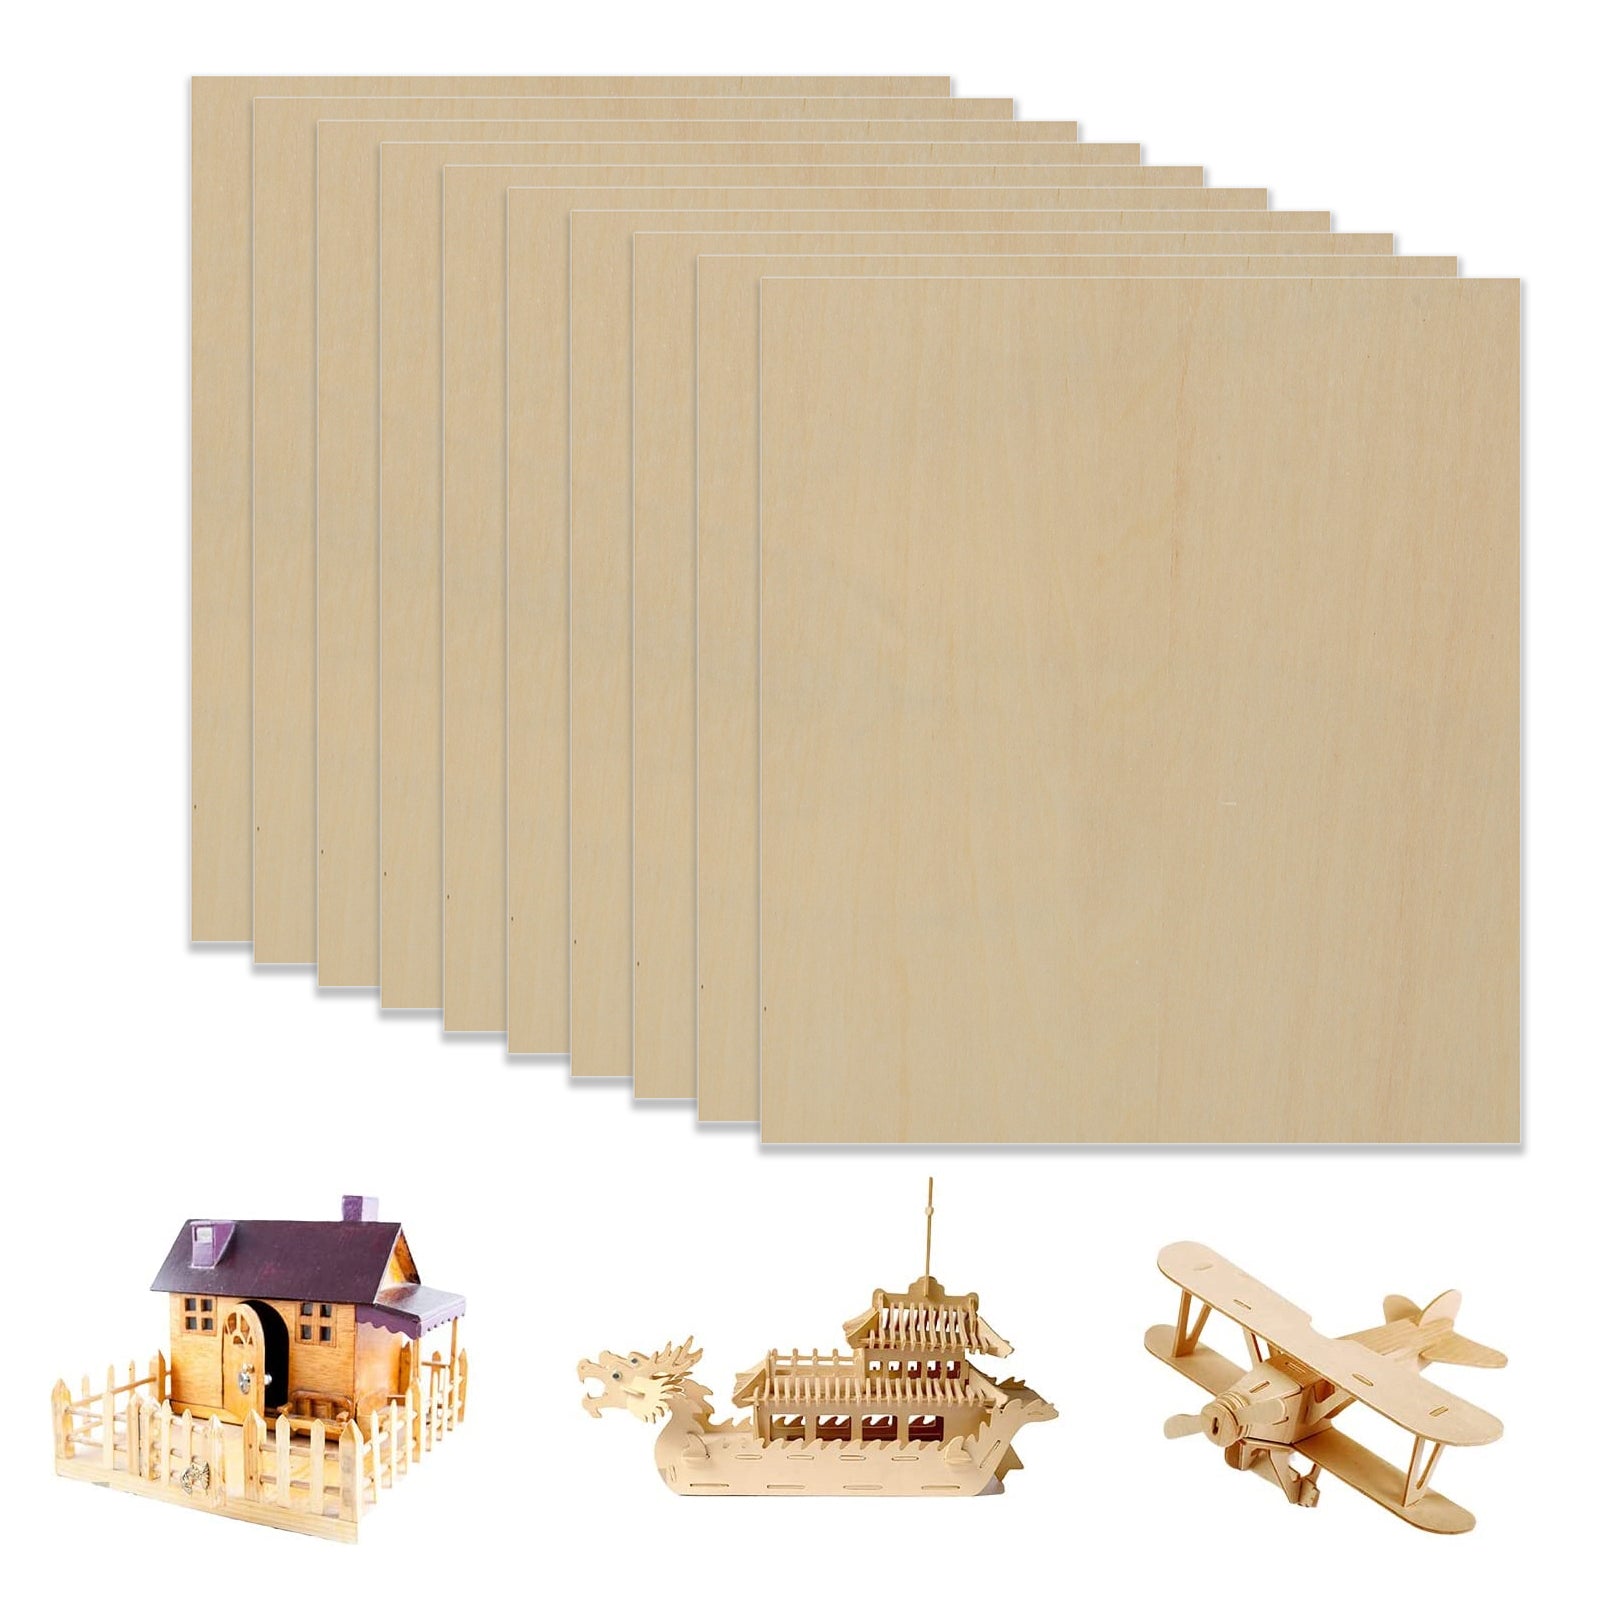 10 Stück A4-Sperrholzplatten, 3 mm Dicke (+/- 0,2 mm), Lindenholz-Sperrholz, 21 x 29,7 x 0,3 cm, zum Gravieren